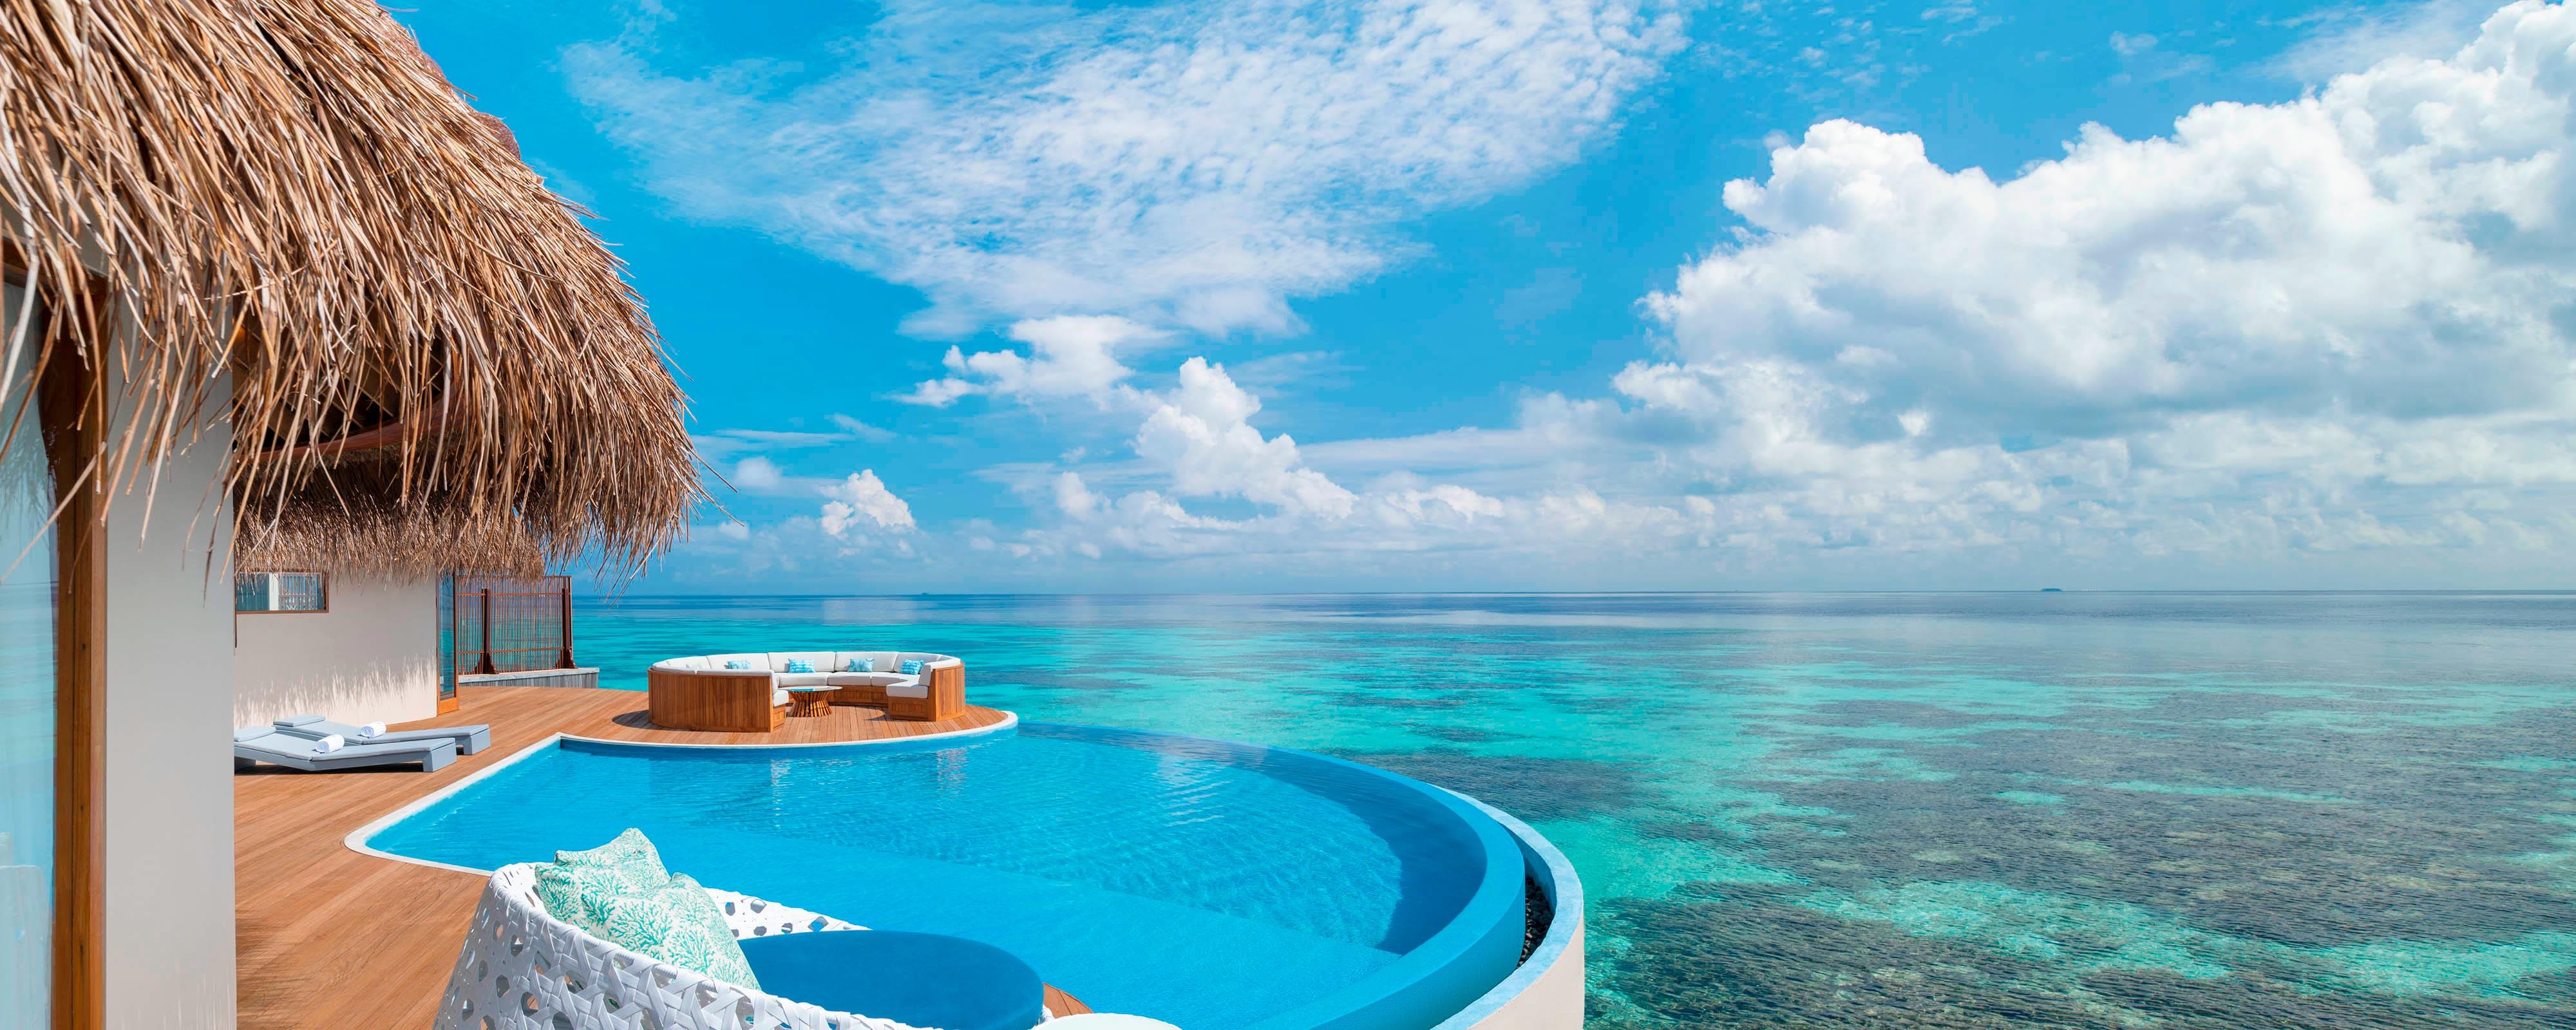 Maldives Resorts| W Maldives